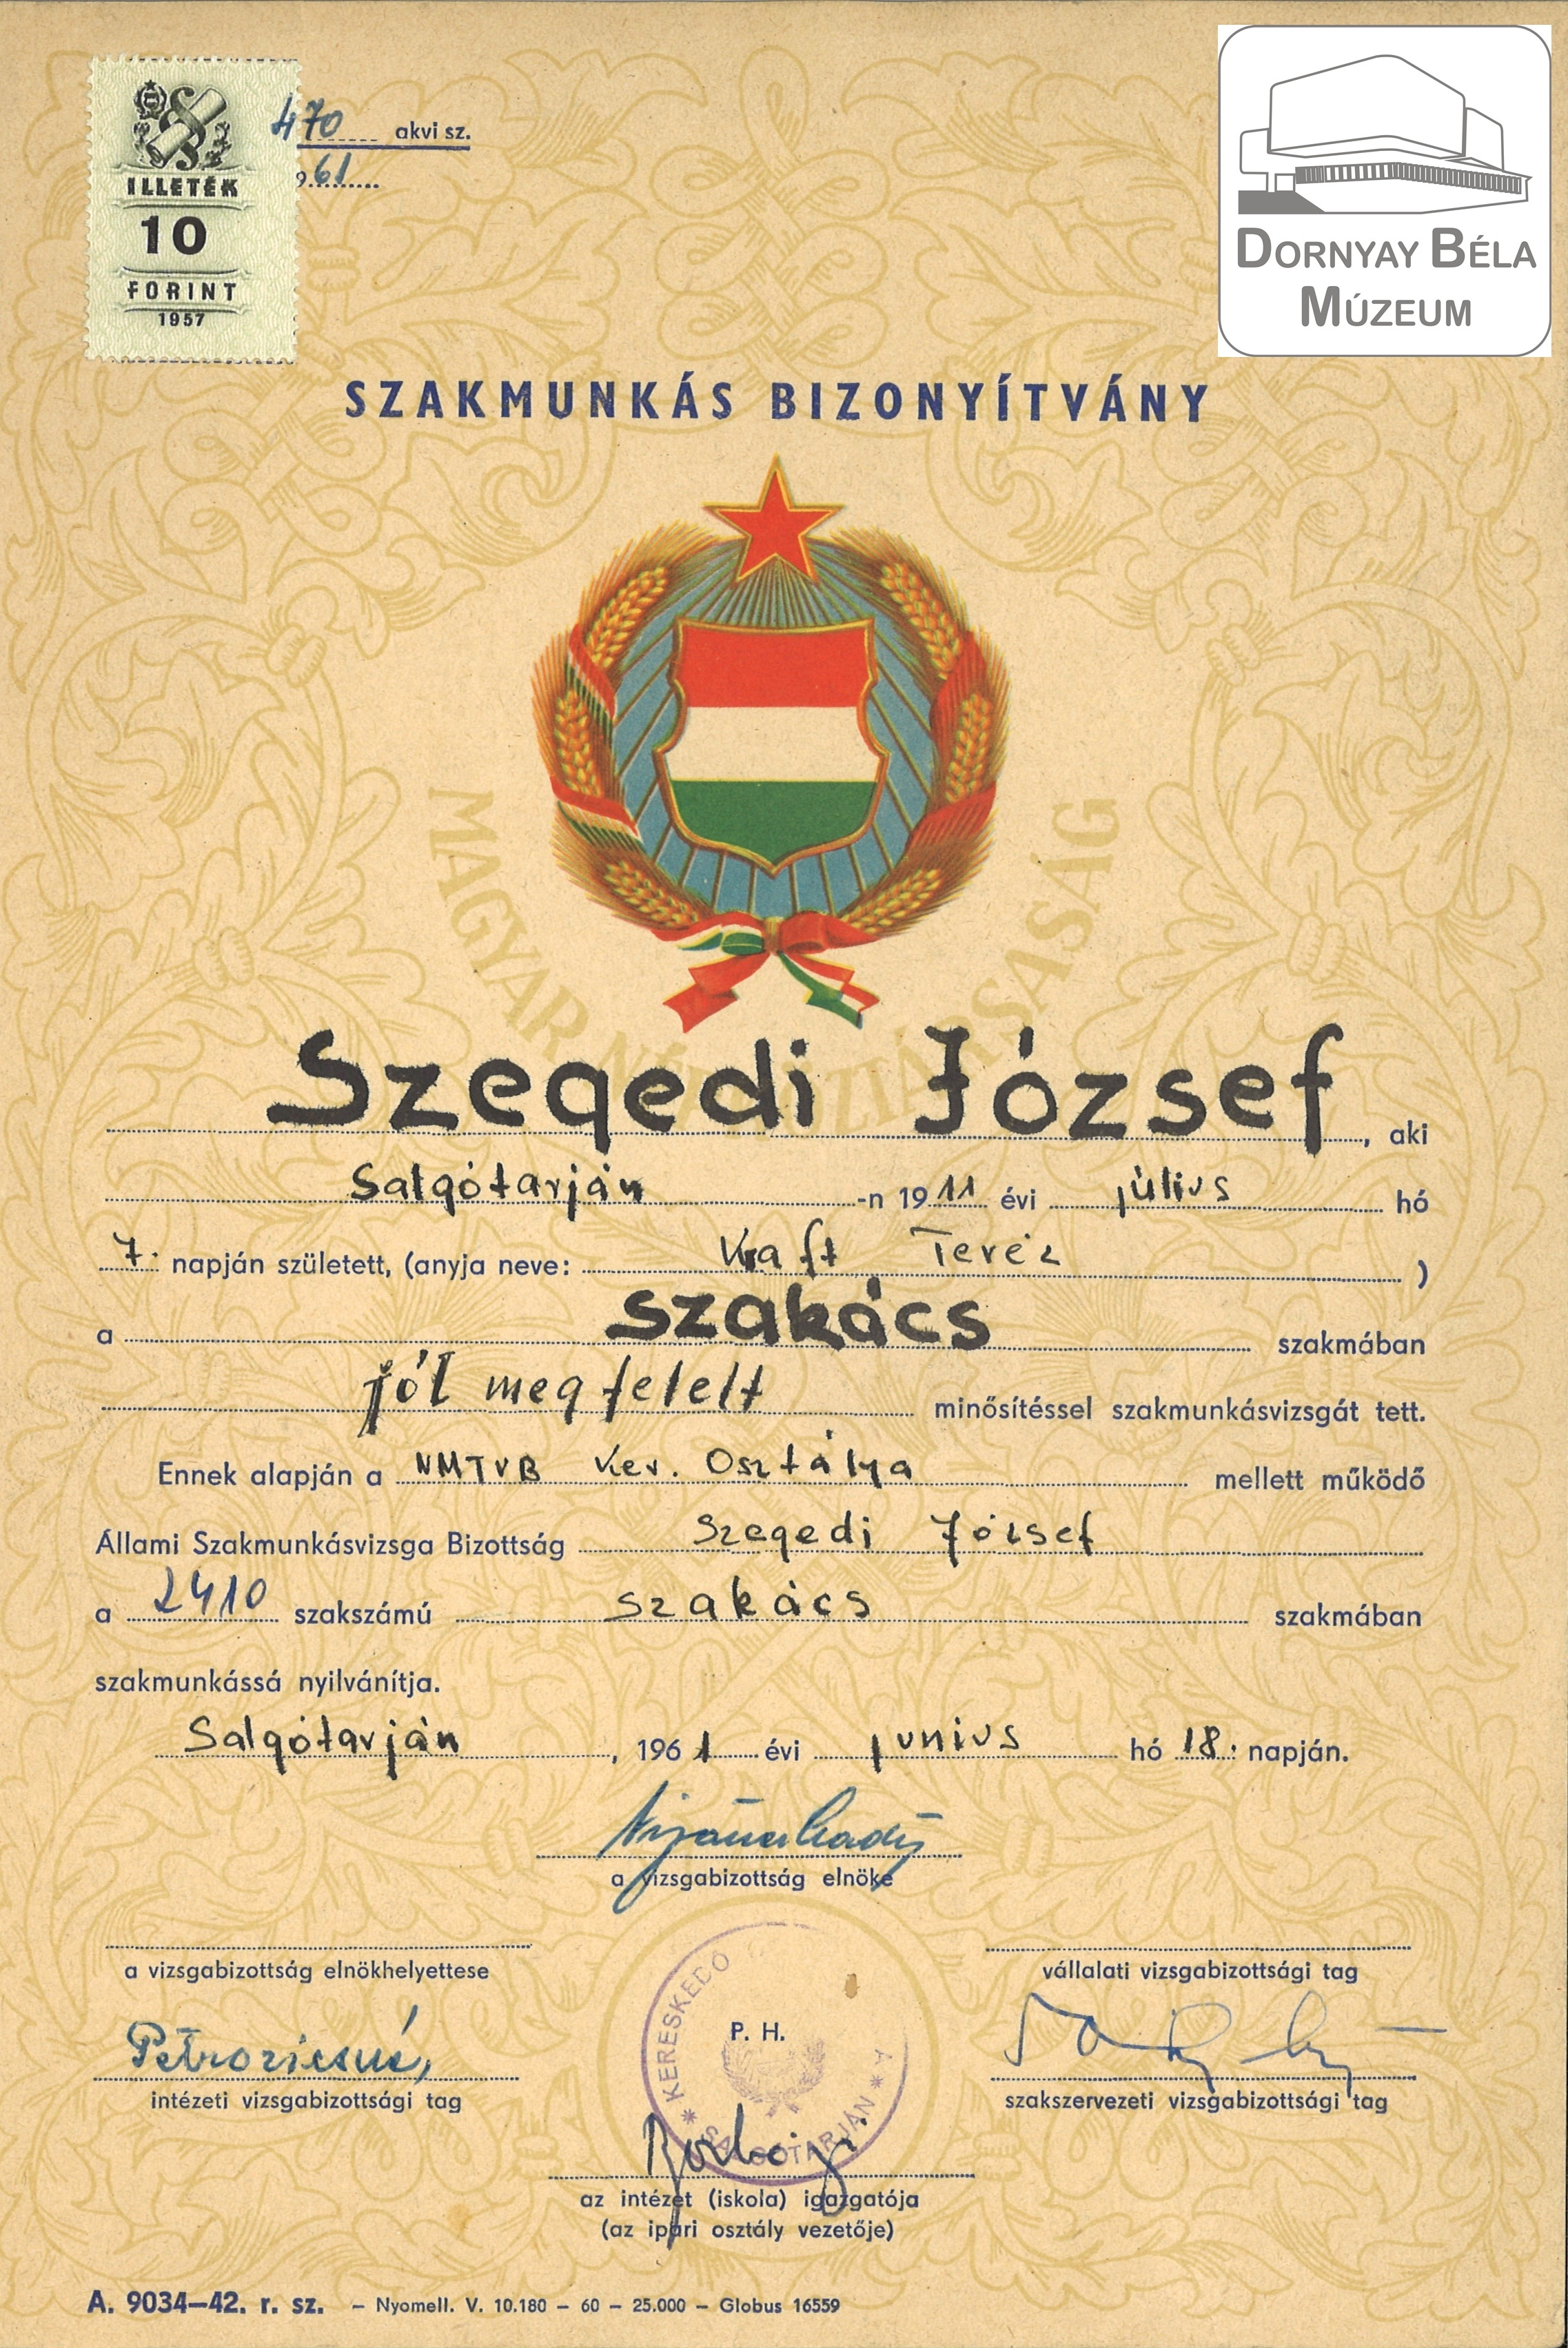 Szegedi József szakács szakmunkás bizonyítványa (Dornyay Béla Múzeum, Salgótarján CC BY-NC-SA)